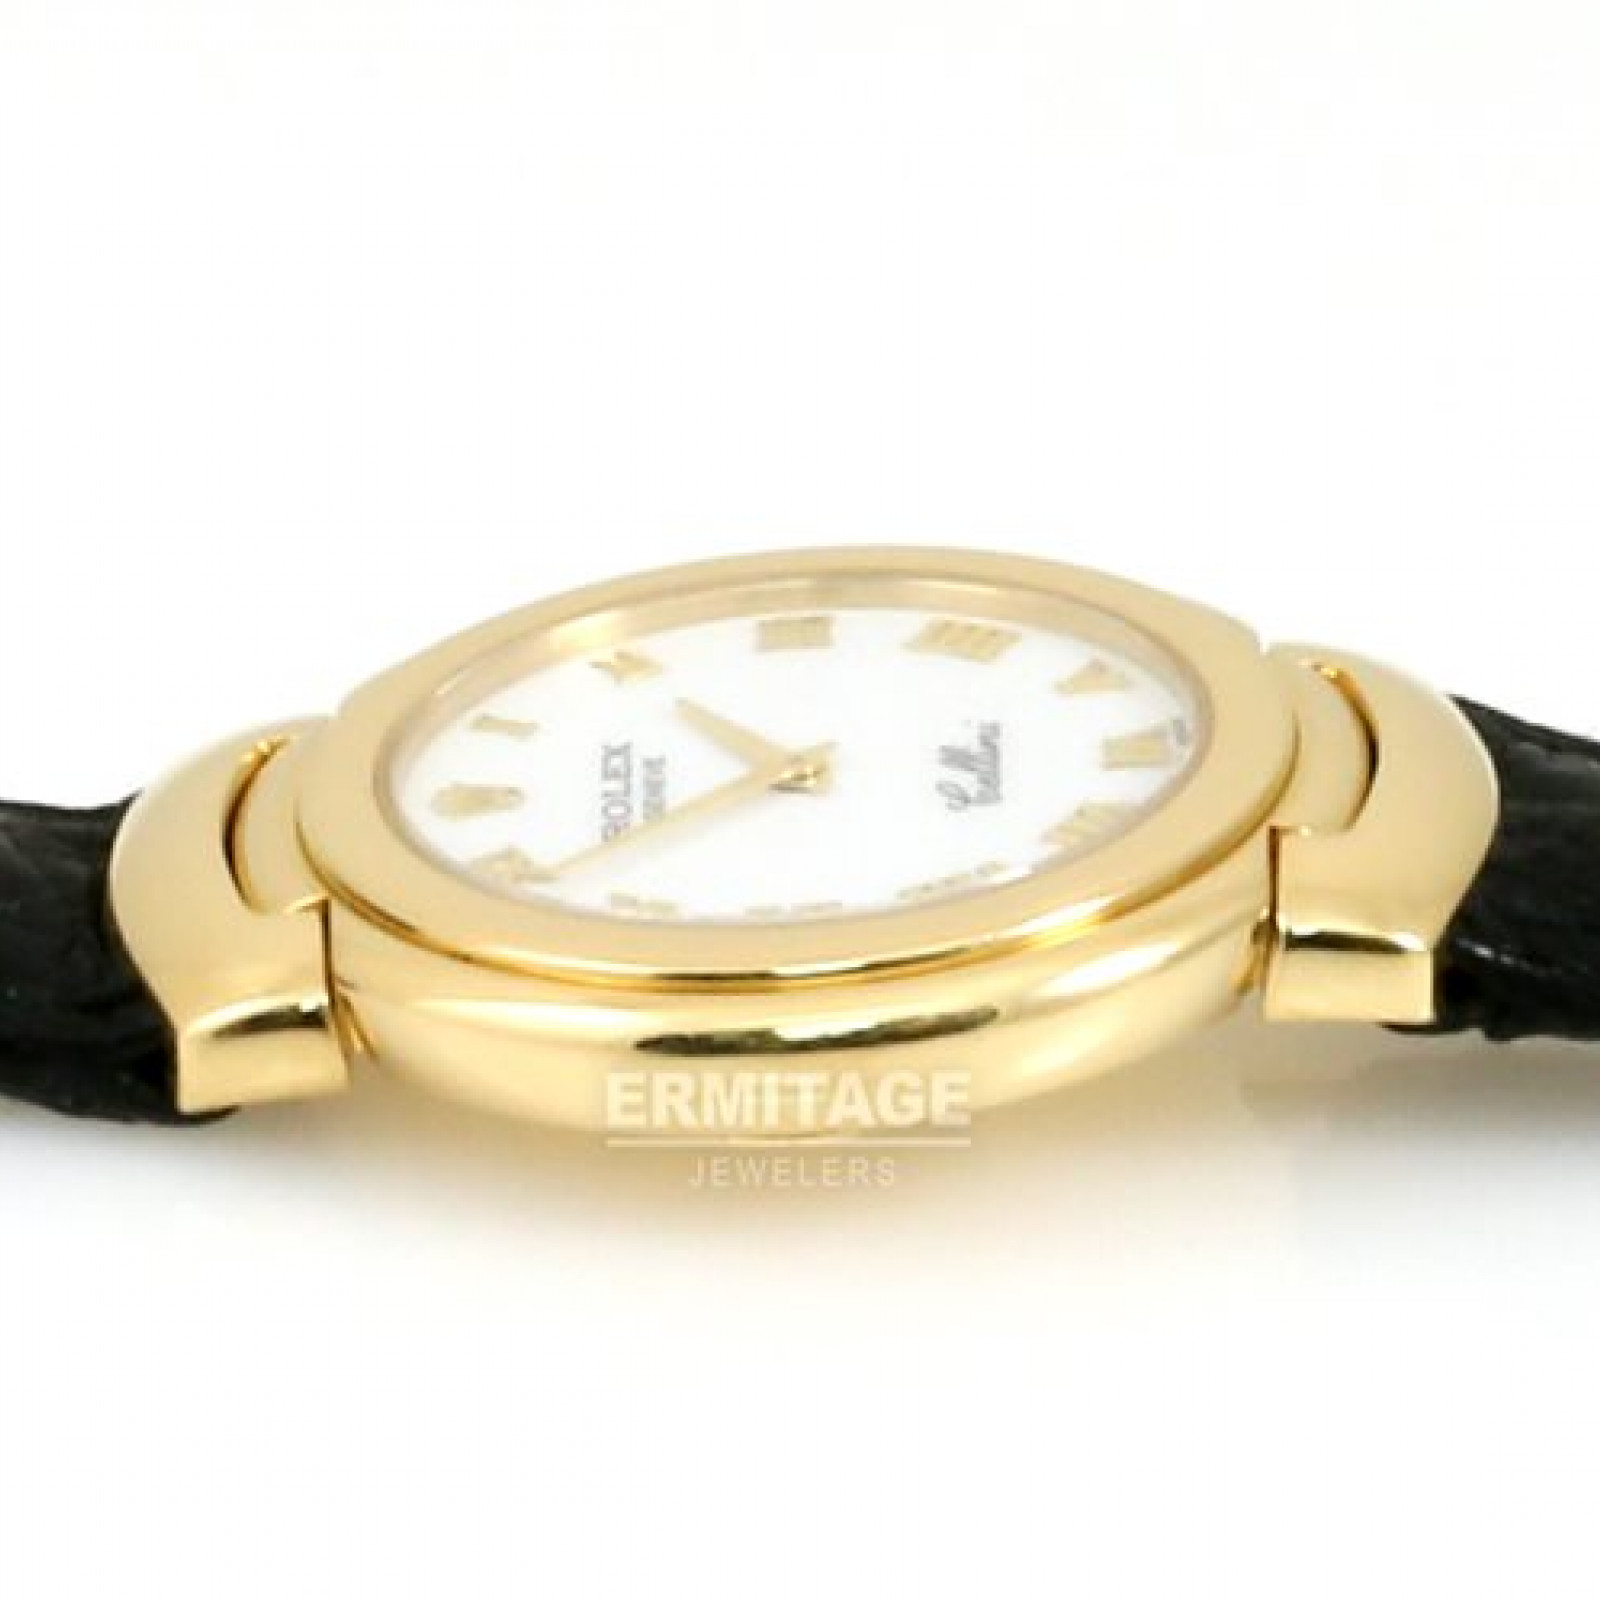 Rolex Cellini 6622 Gold 1992